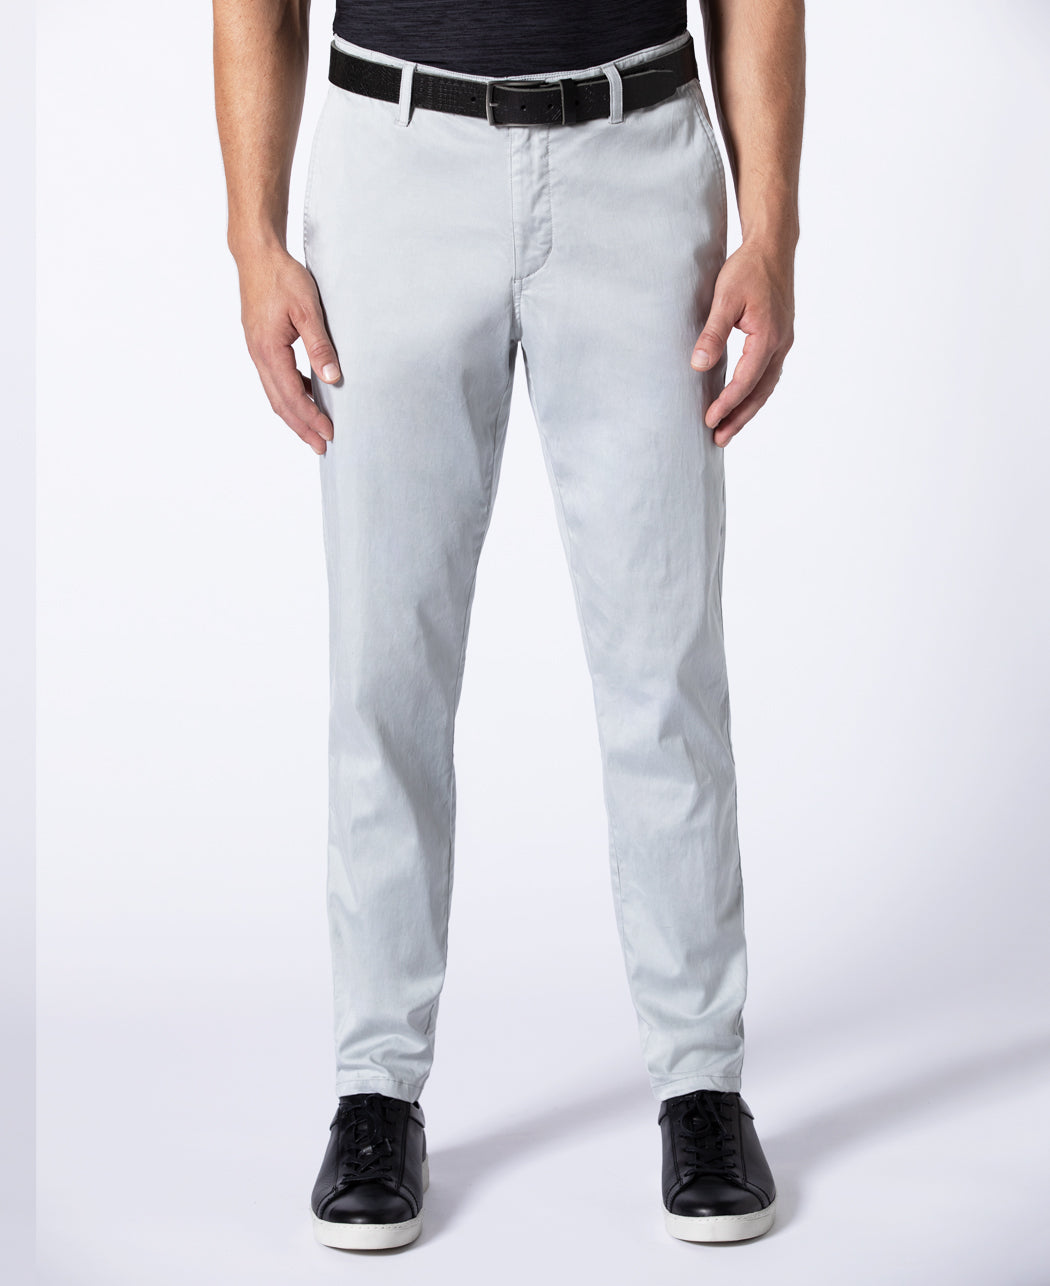 Monte Carlo Cotton & Tencel™ Pants - 32